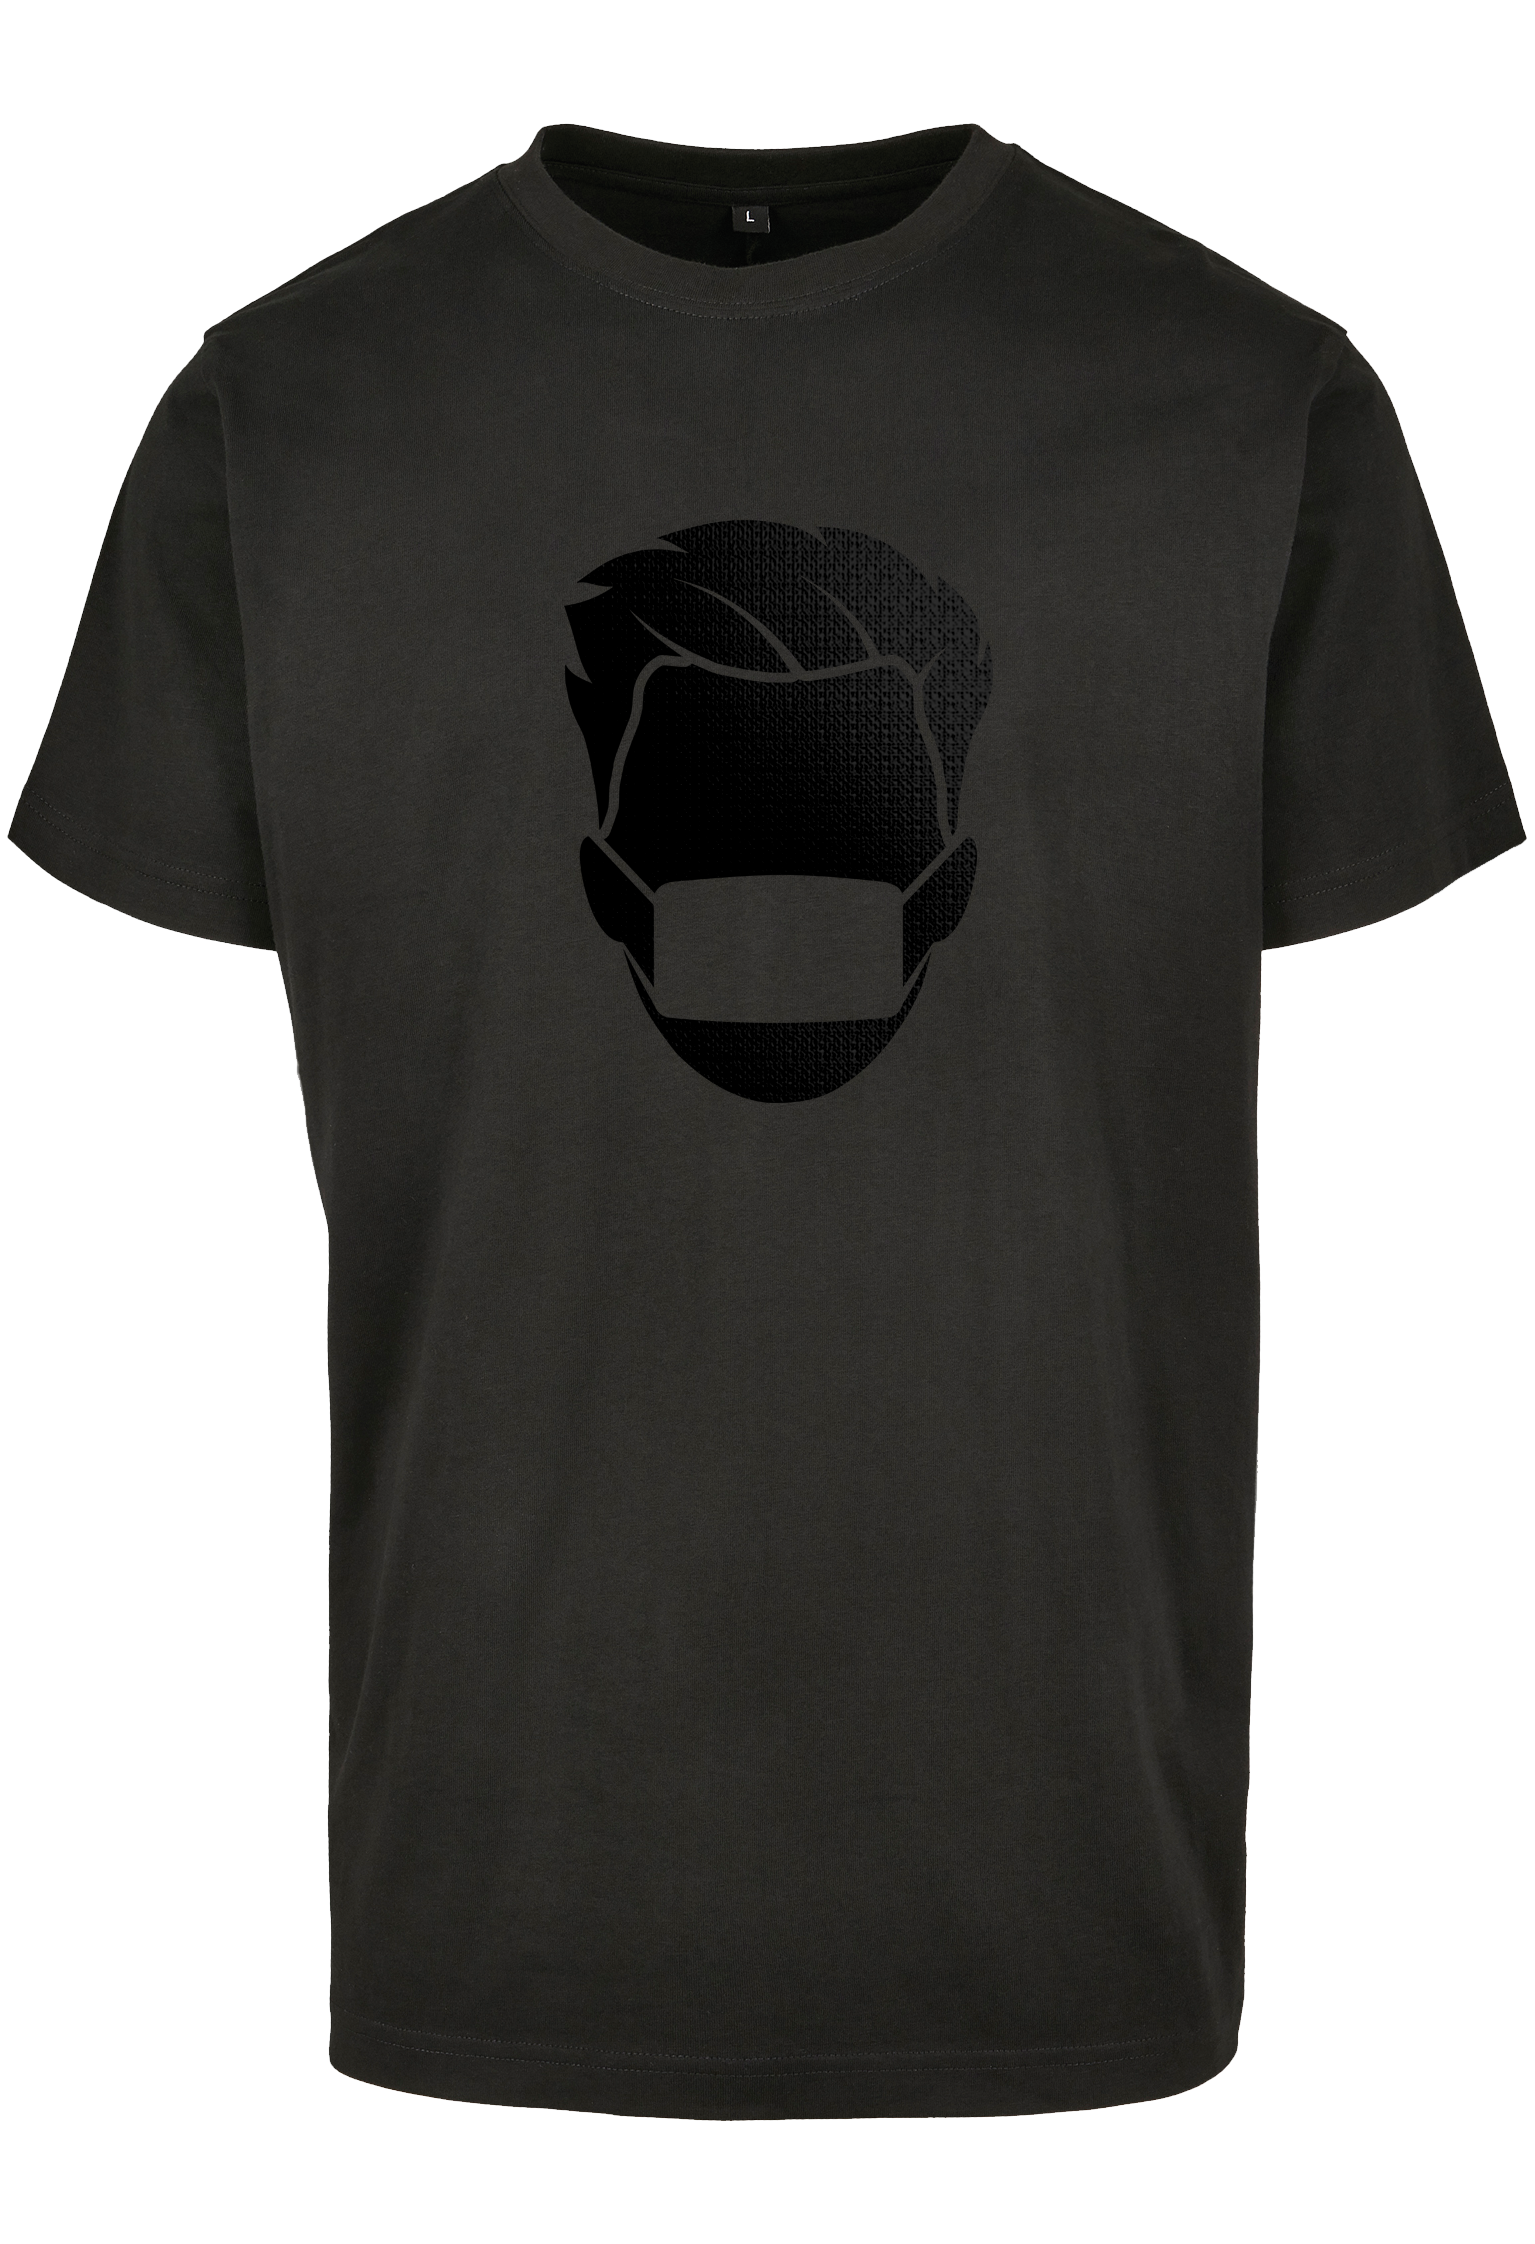 Narcos black T-Shirt